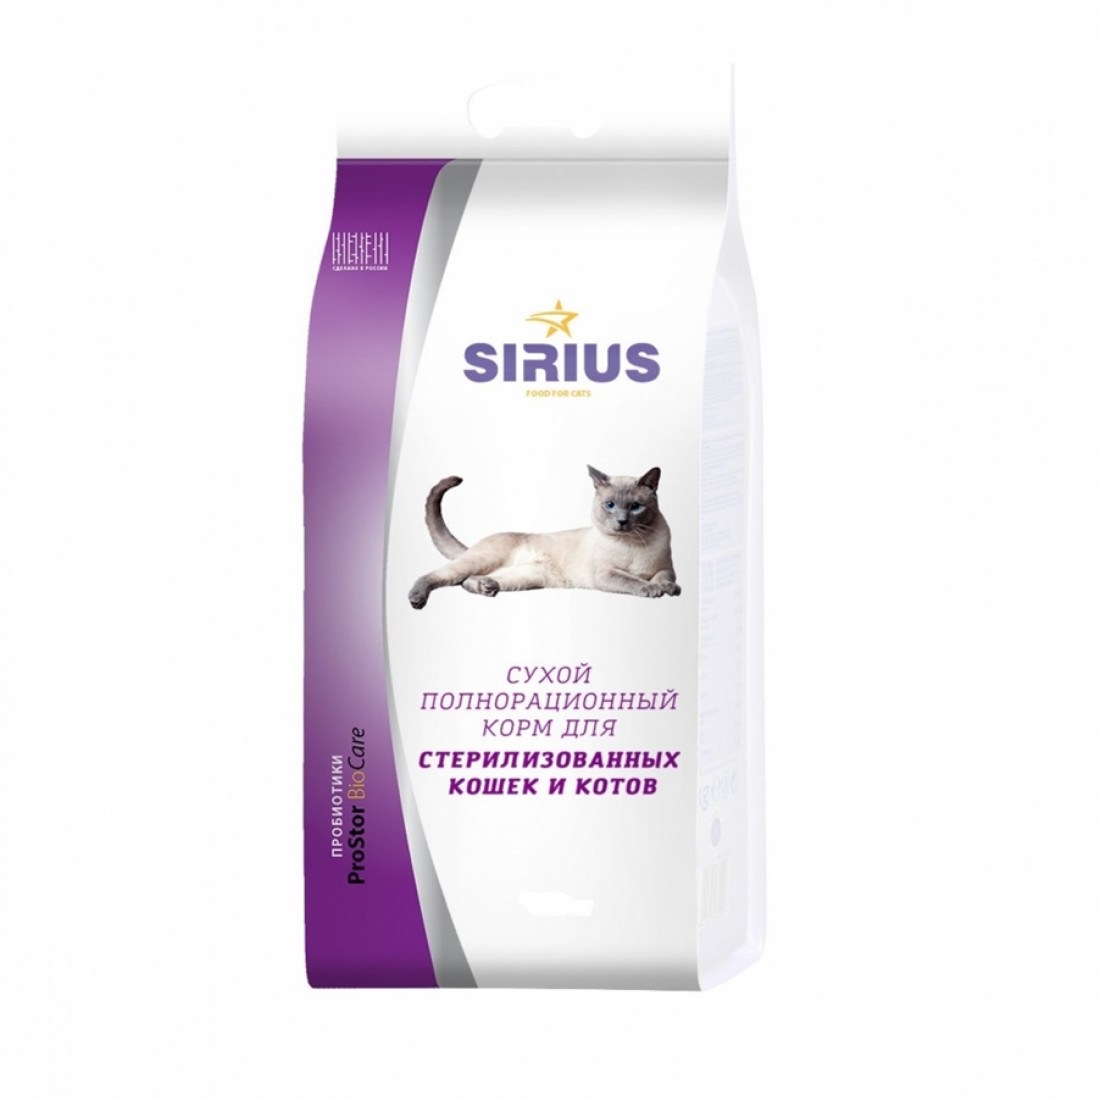 Сириус для кошек 10 кг купить. Sirius сухой корм для стерилизованных кошек 1,5 кг.. Сириус корм для кошек 1.5 кг для котят. Сириус корм для кошек 10 кг. Сириус корм для кошек Уринари.